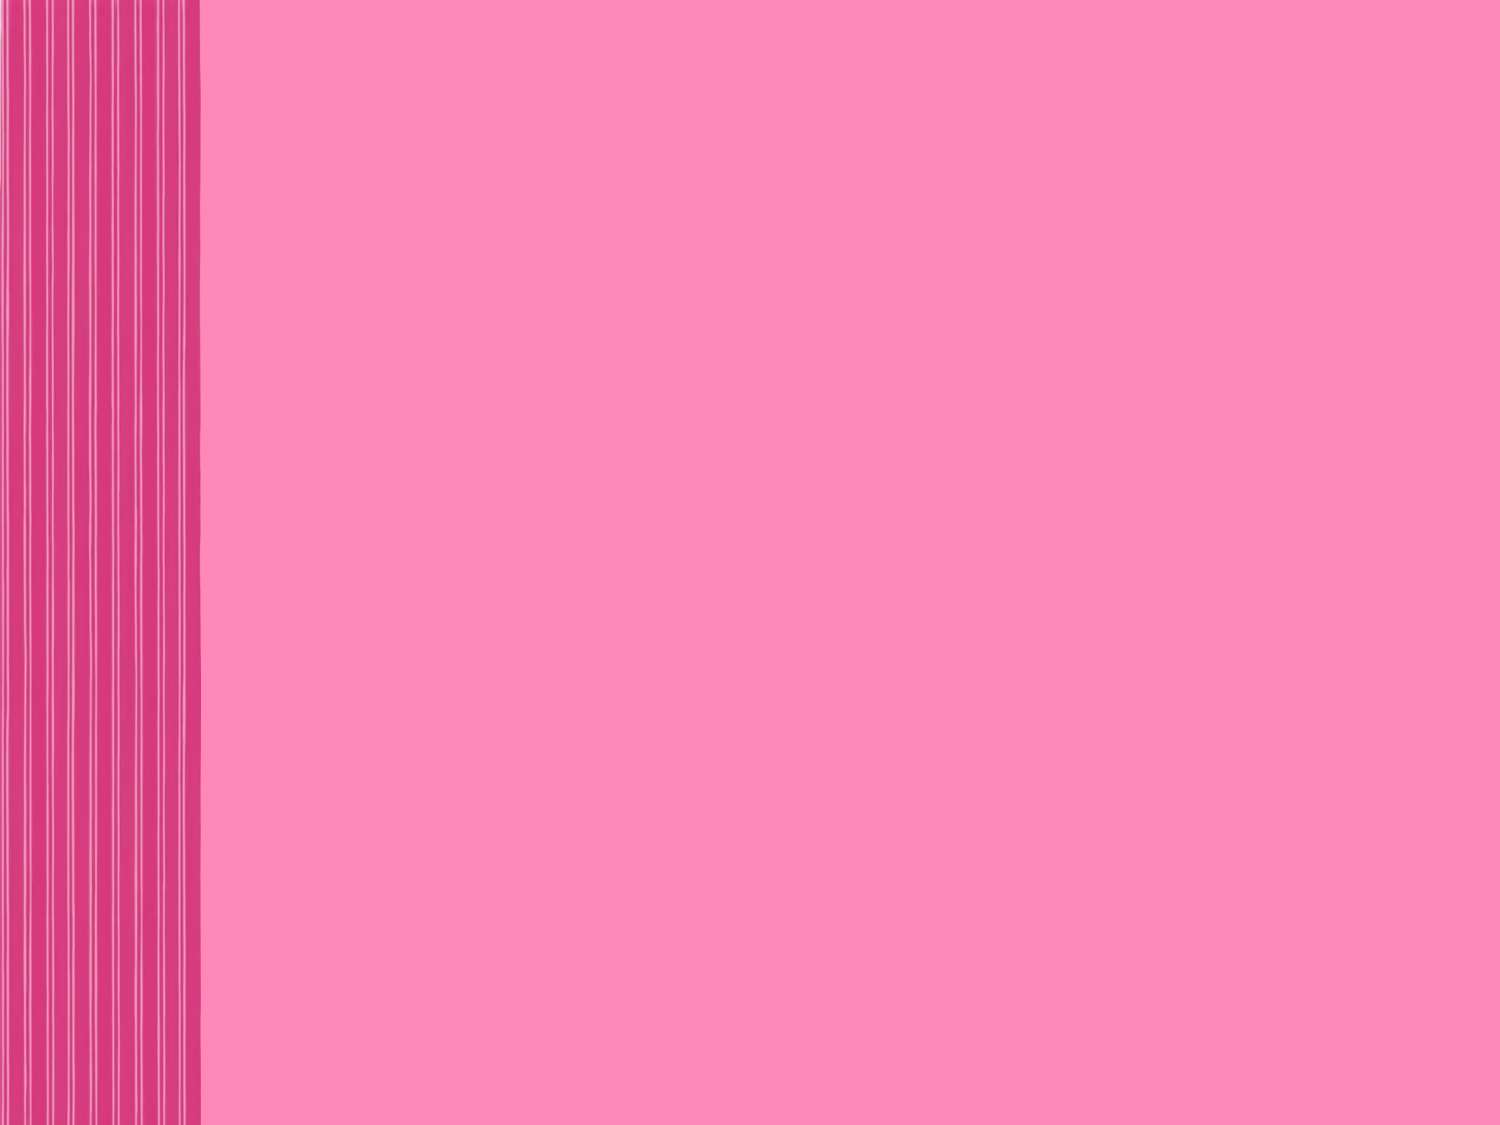 Multi Stripe Side Bar Pink backgrounds